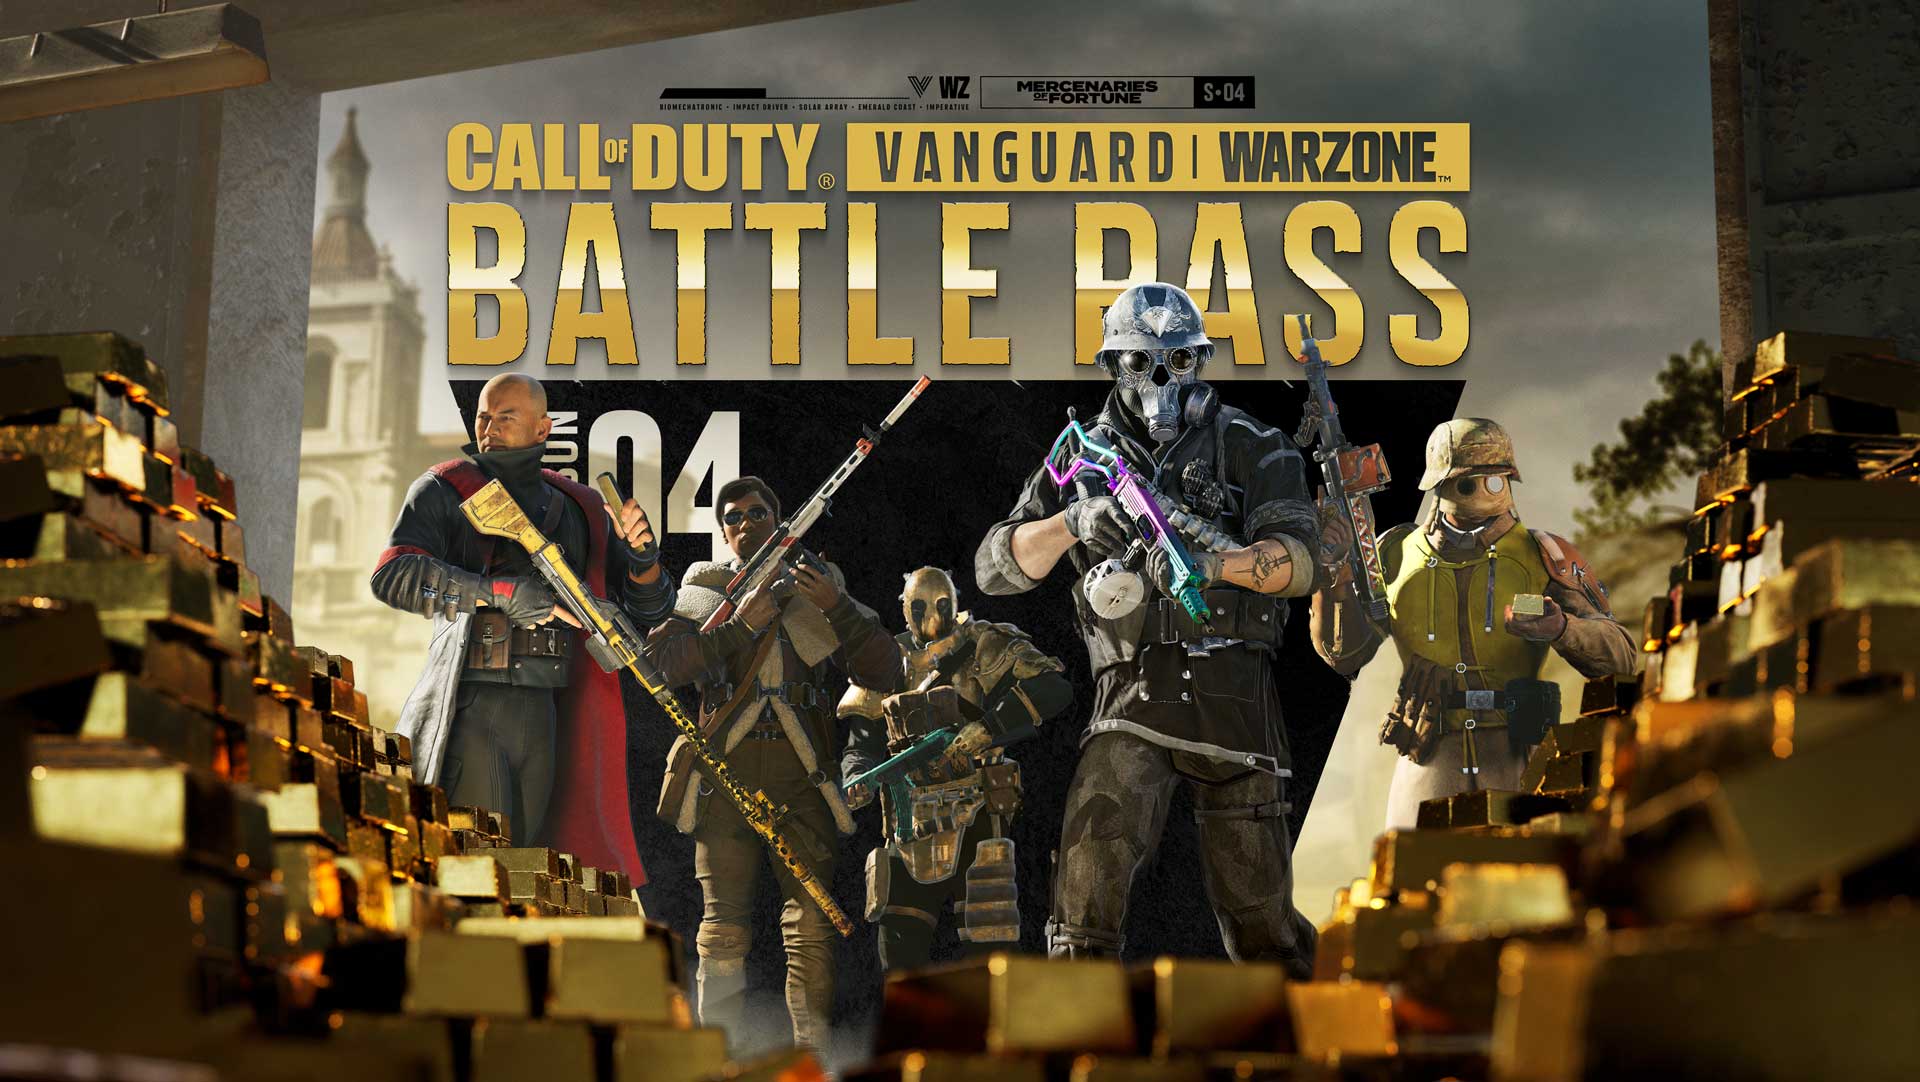 Call of Duty: Vanguard y Warzone – Resumen del Pase de batalla y lotes de Mercenarios de la fortuna